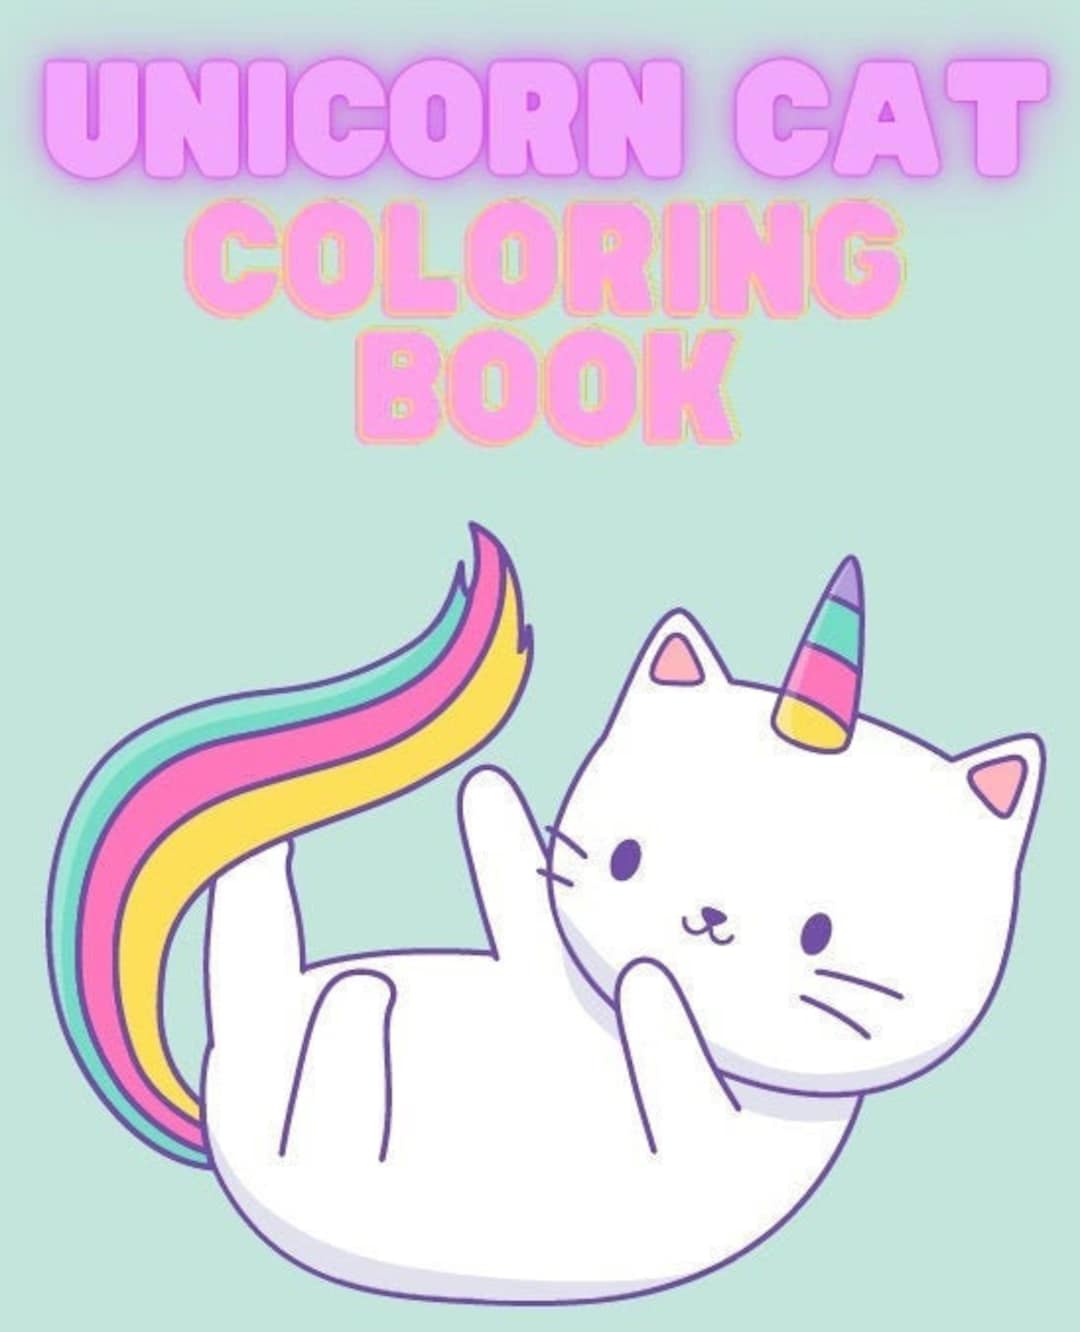 Digital printable unicorn cat coloring book for kids caticorn coloring pages unicorn coloring book coloring pages for kids pages activity